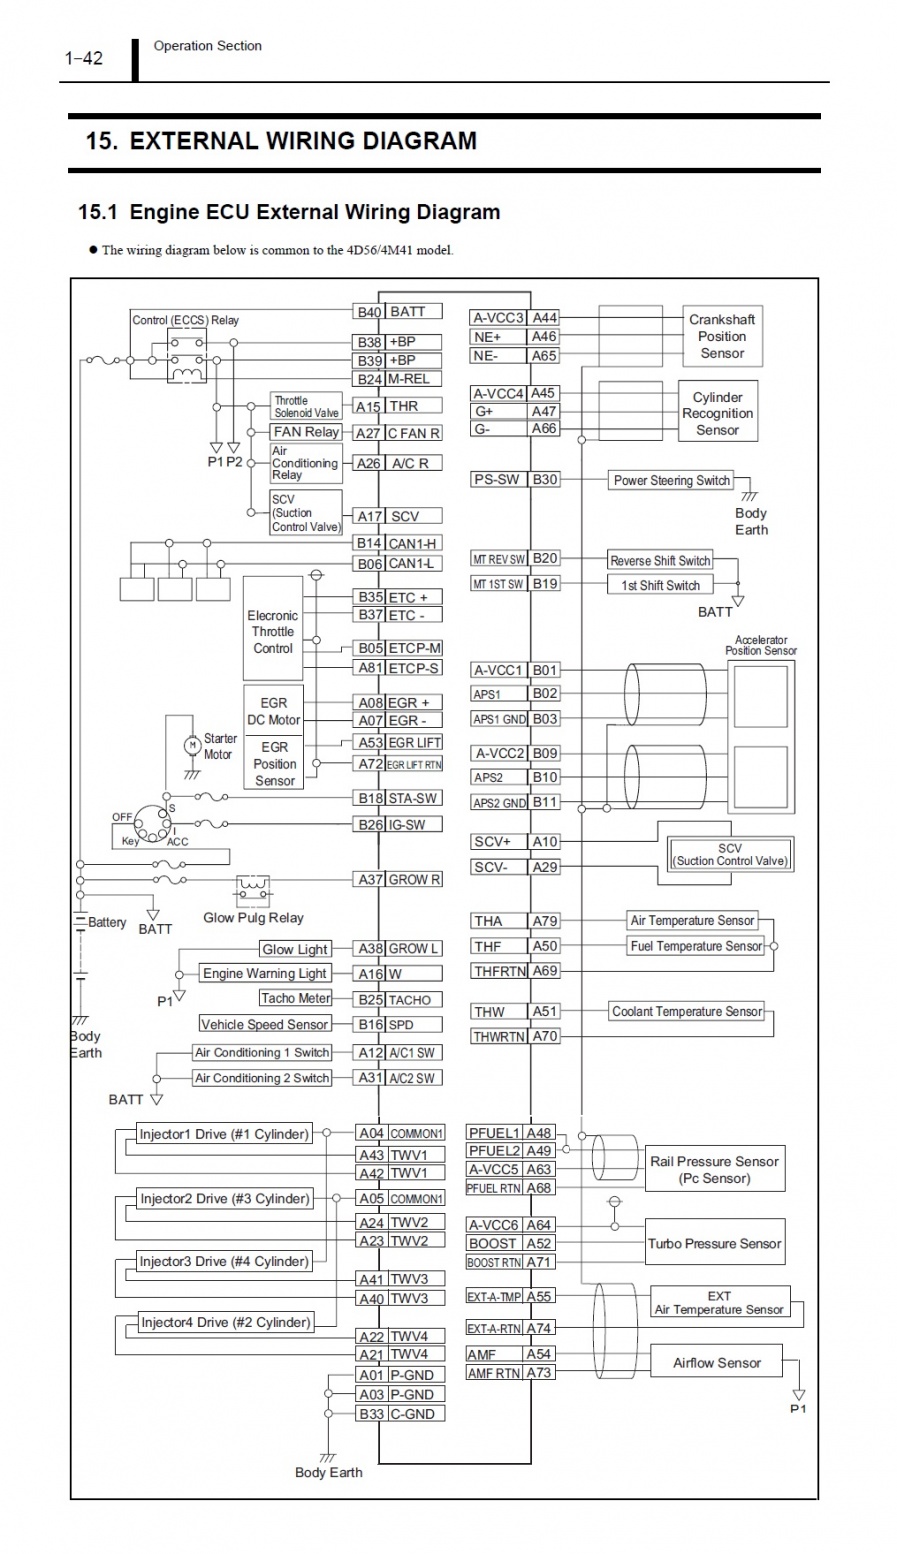 ชื่อ:  Engine ECU External Wiring Diagram.jpg
ครั้ง: 3374
ขนาด:  356.8 กิโลไบต์